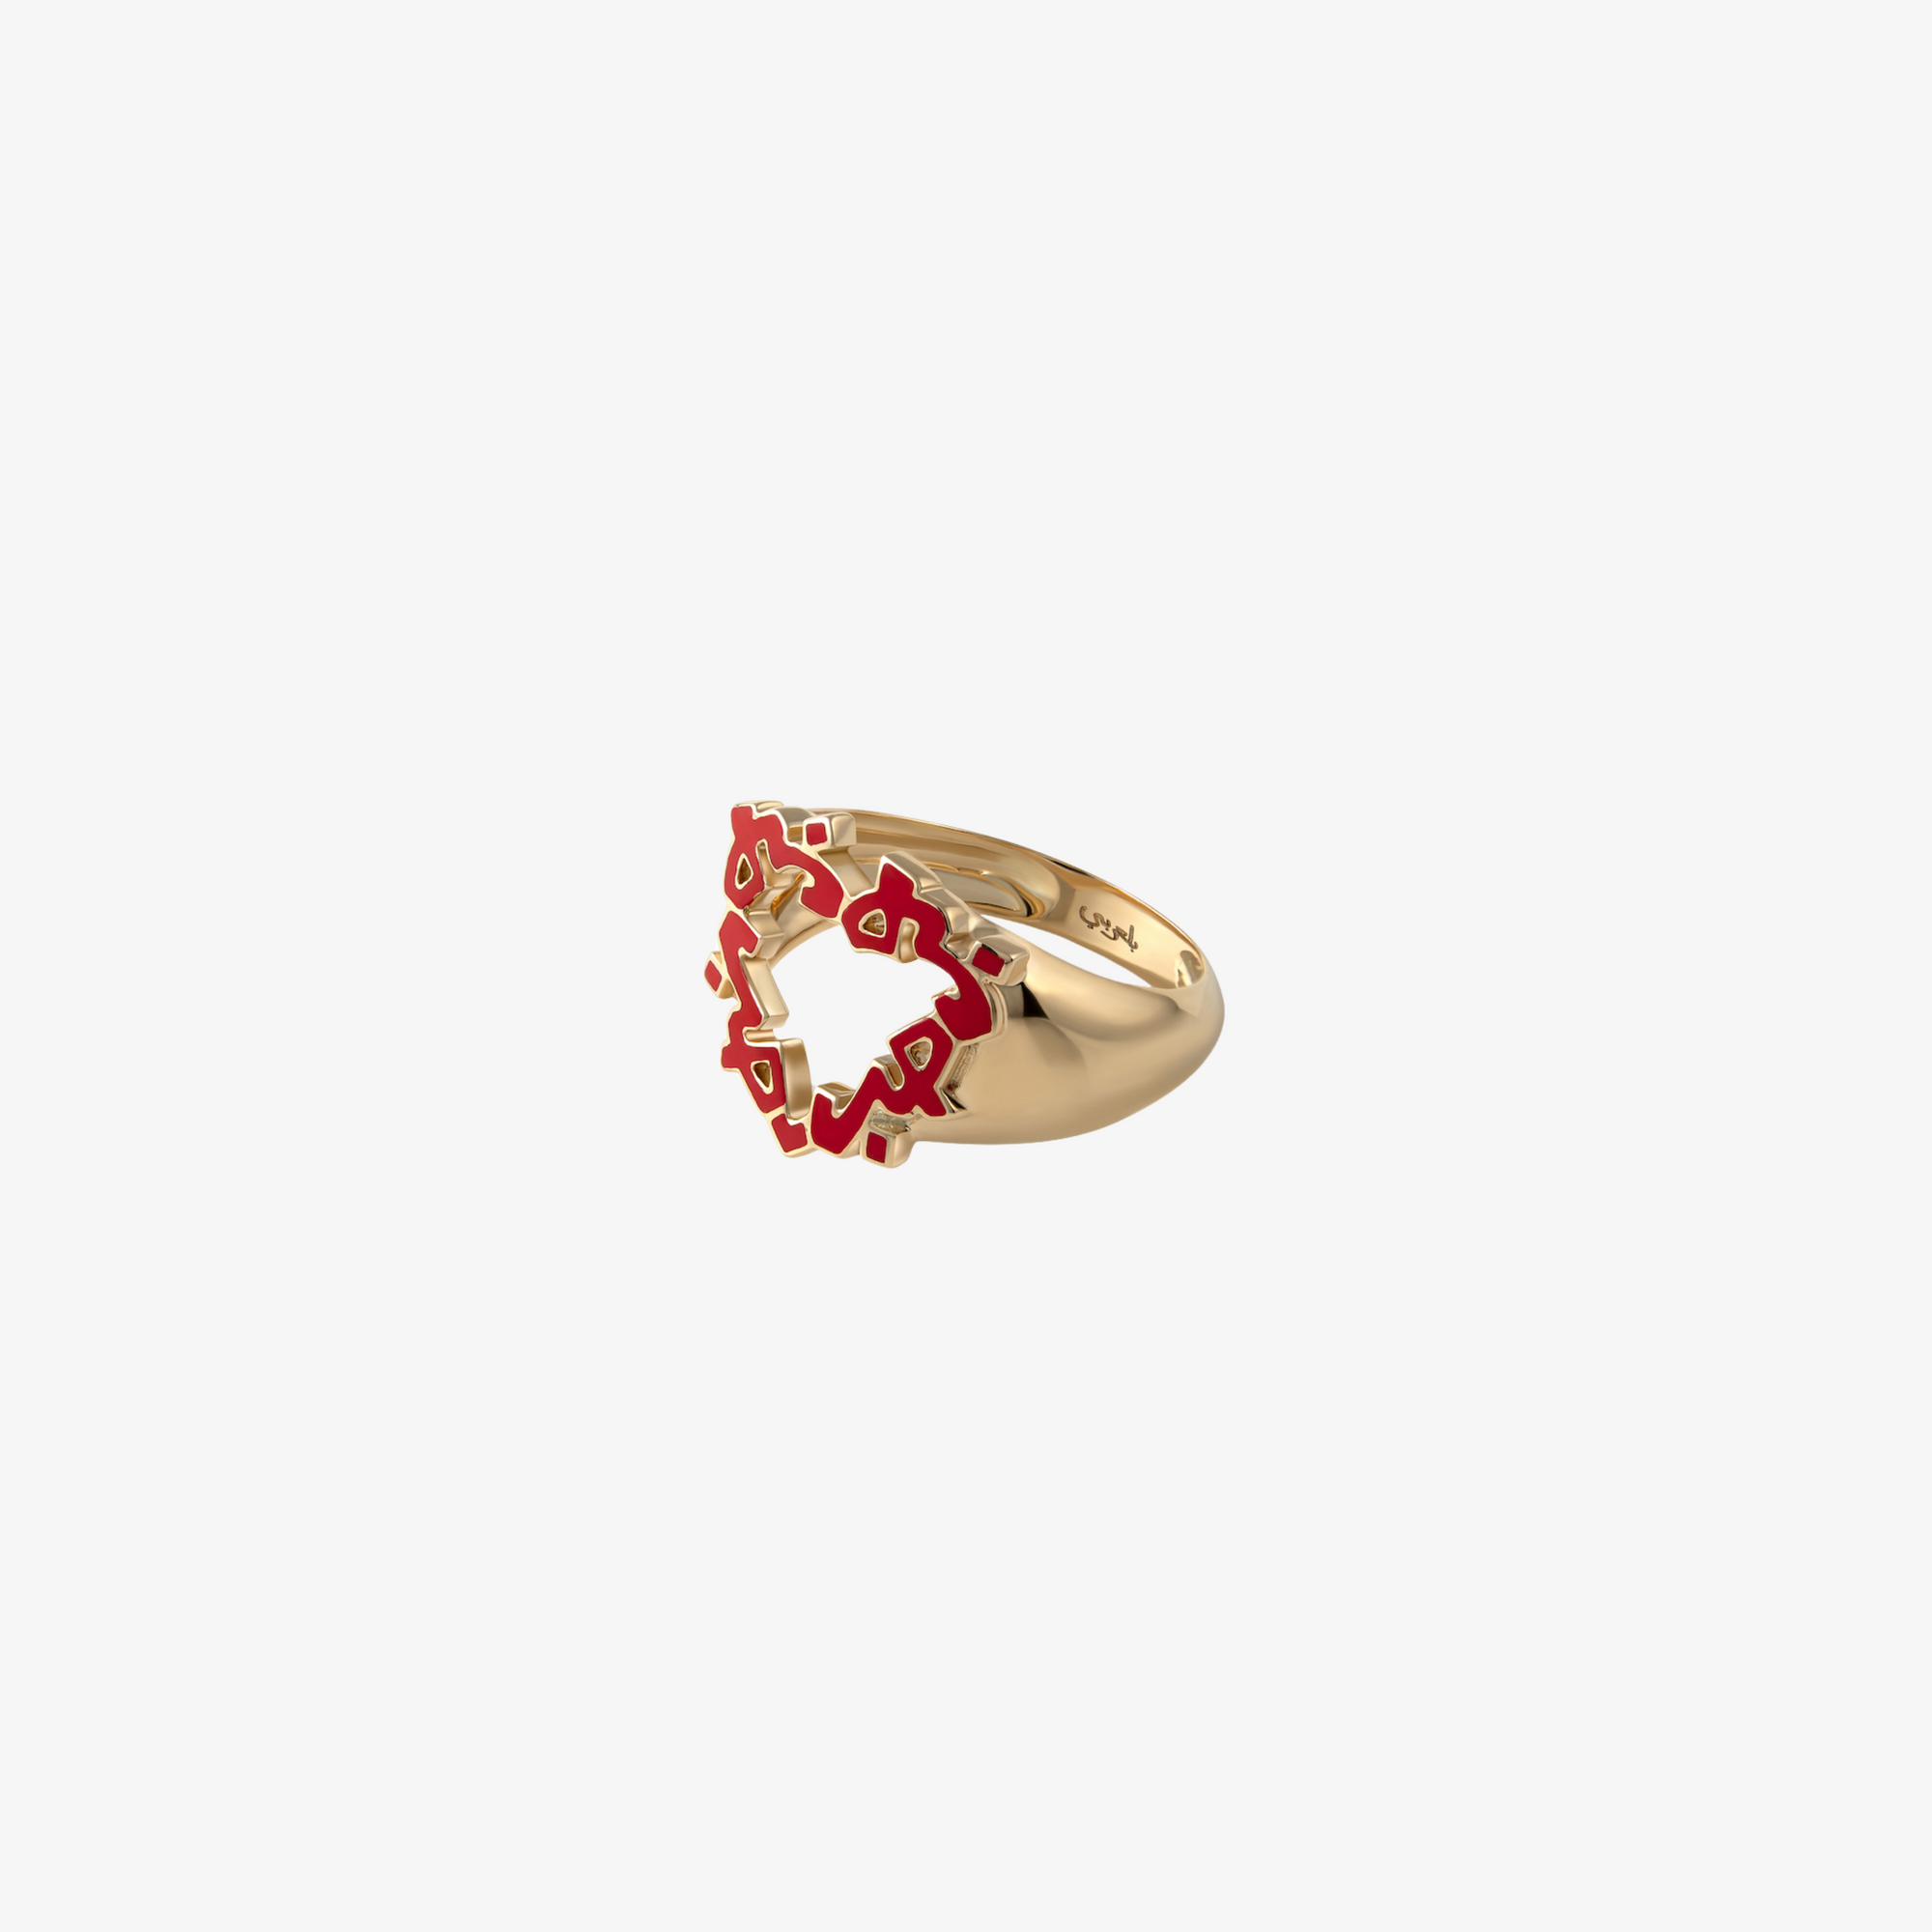 HOBB — 18K Gold Heart Shaped Enamel Signet Ring